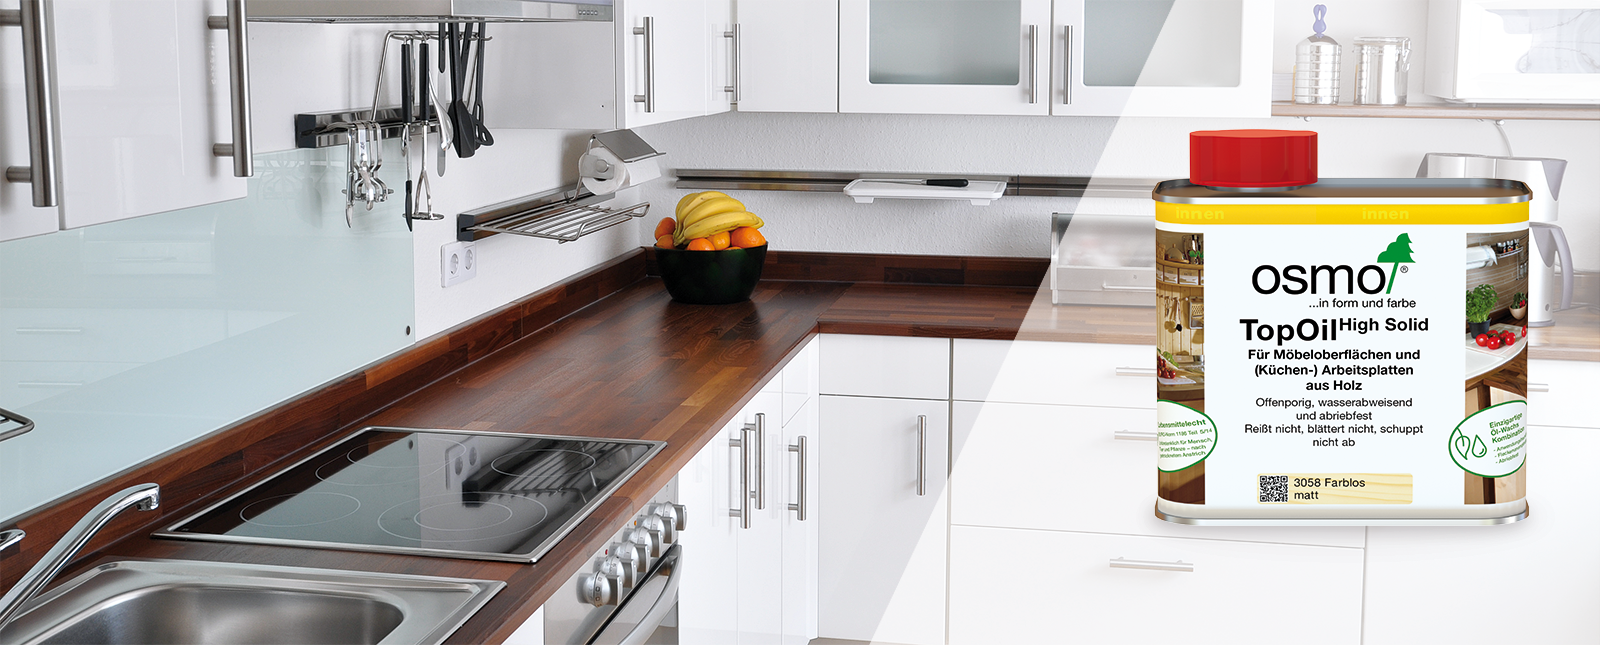 Mit Osmo TopOil und Spray Cleaner ist das Holz in der Küche optimal geschützt und gepflegt